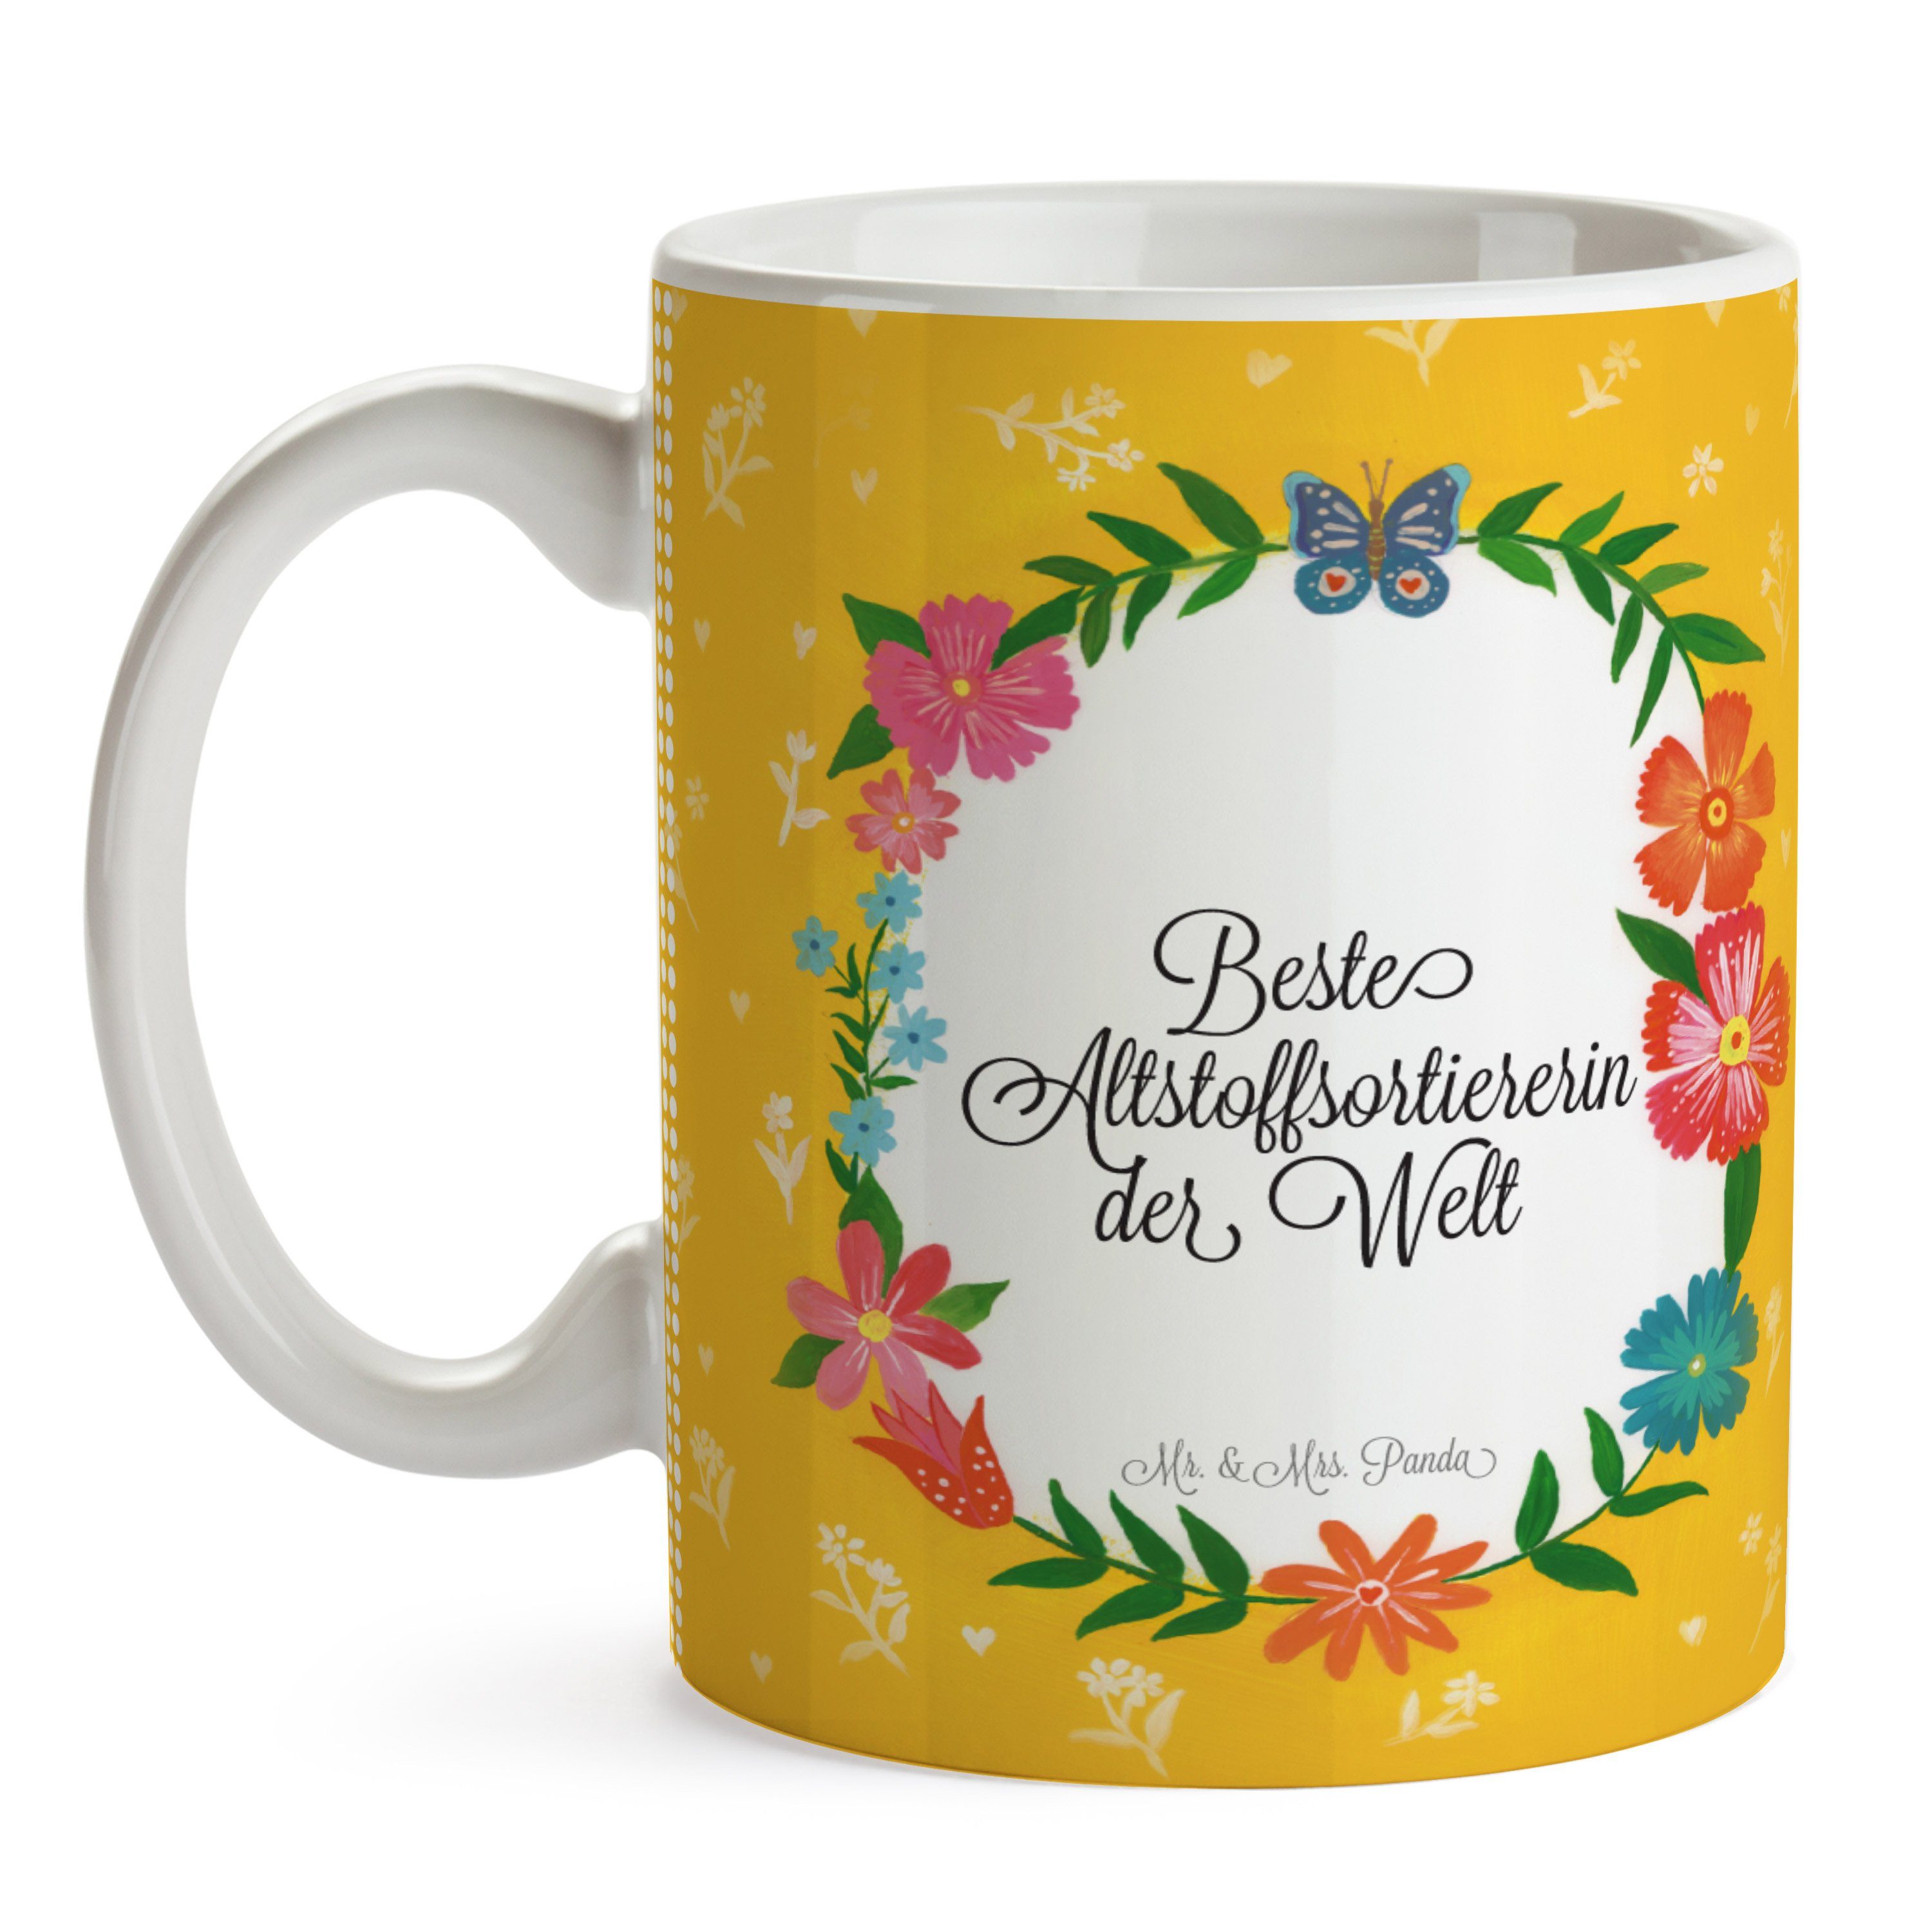 Mr. & Mrs. Panda Tasse Geschenk, Ausbildung, Mot, - Altstoffsortiererin Geschenk Tasse Keramik Tasse